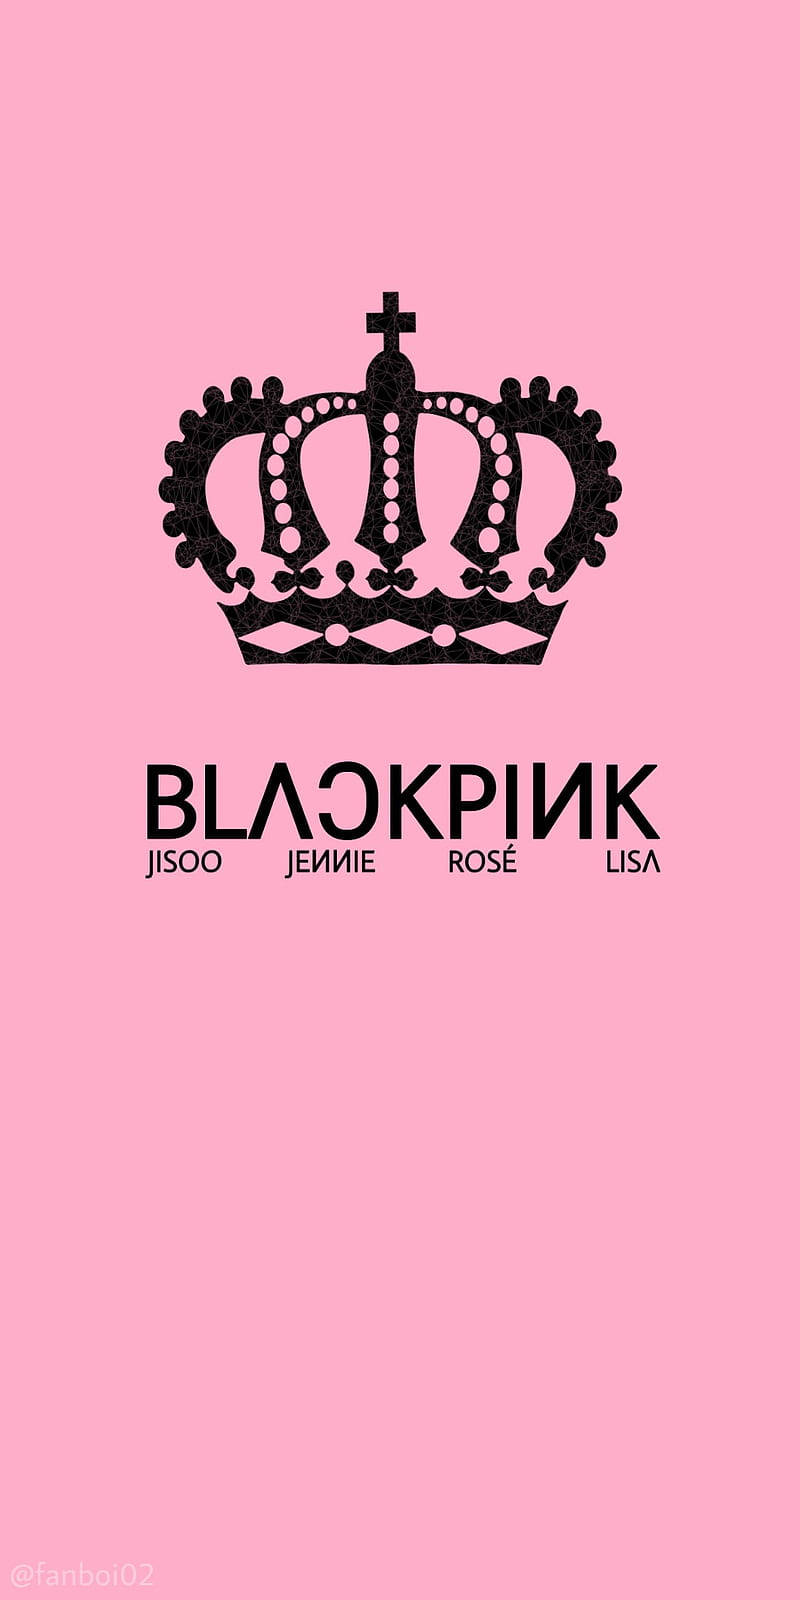 Striking Blackpink Logo With A Dark Background Background